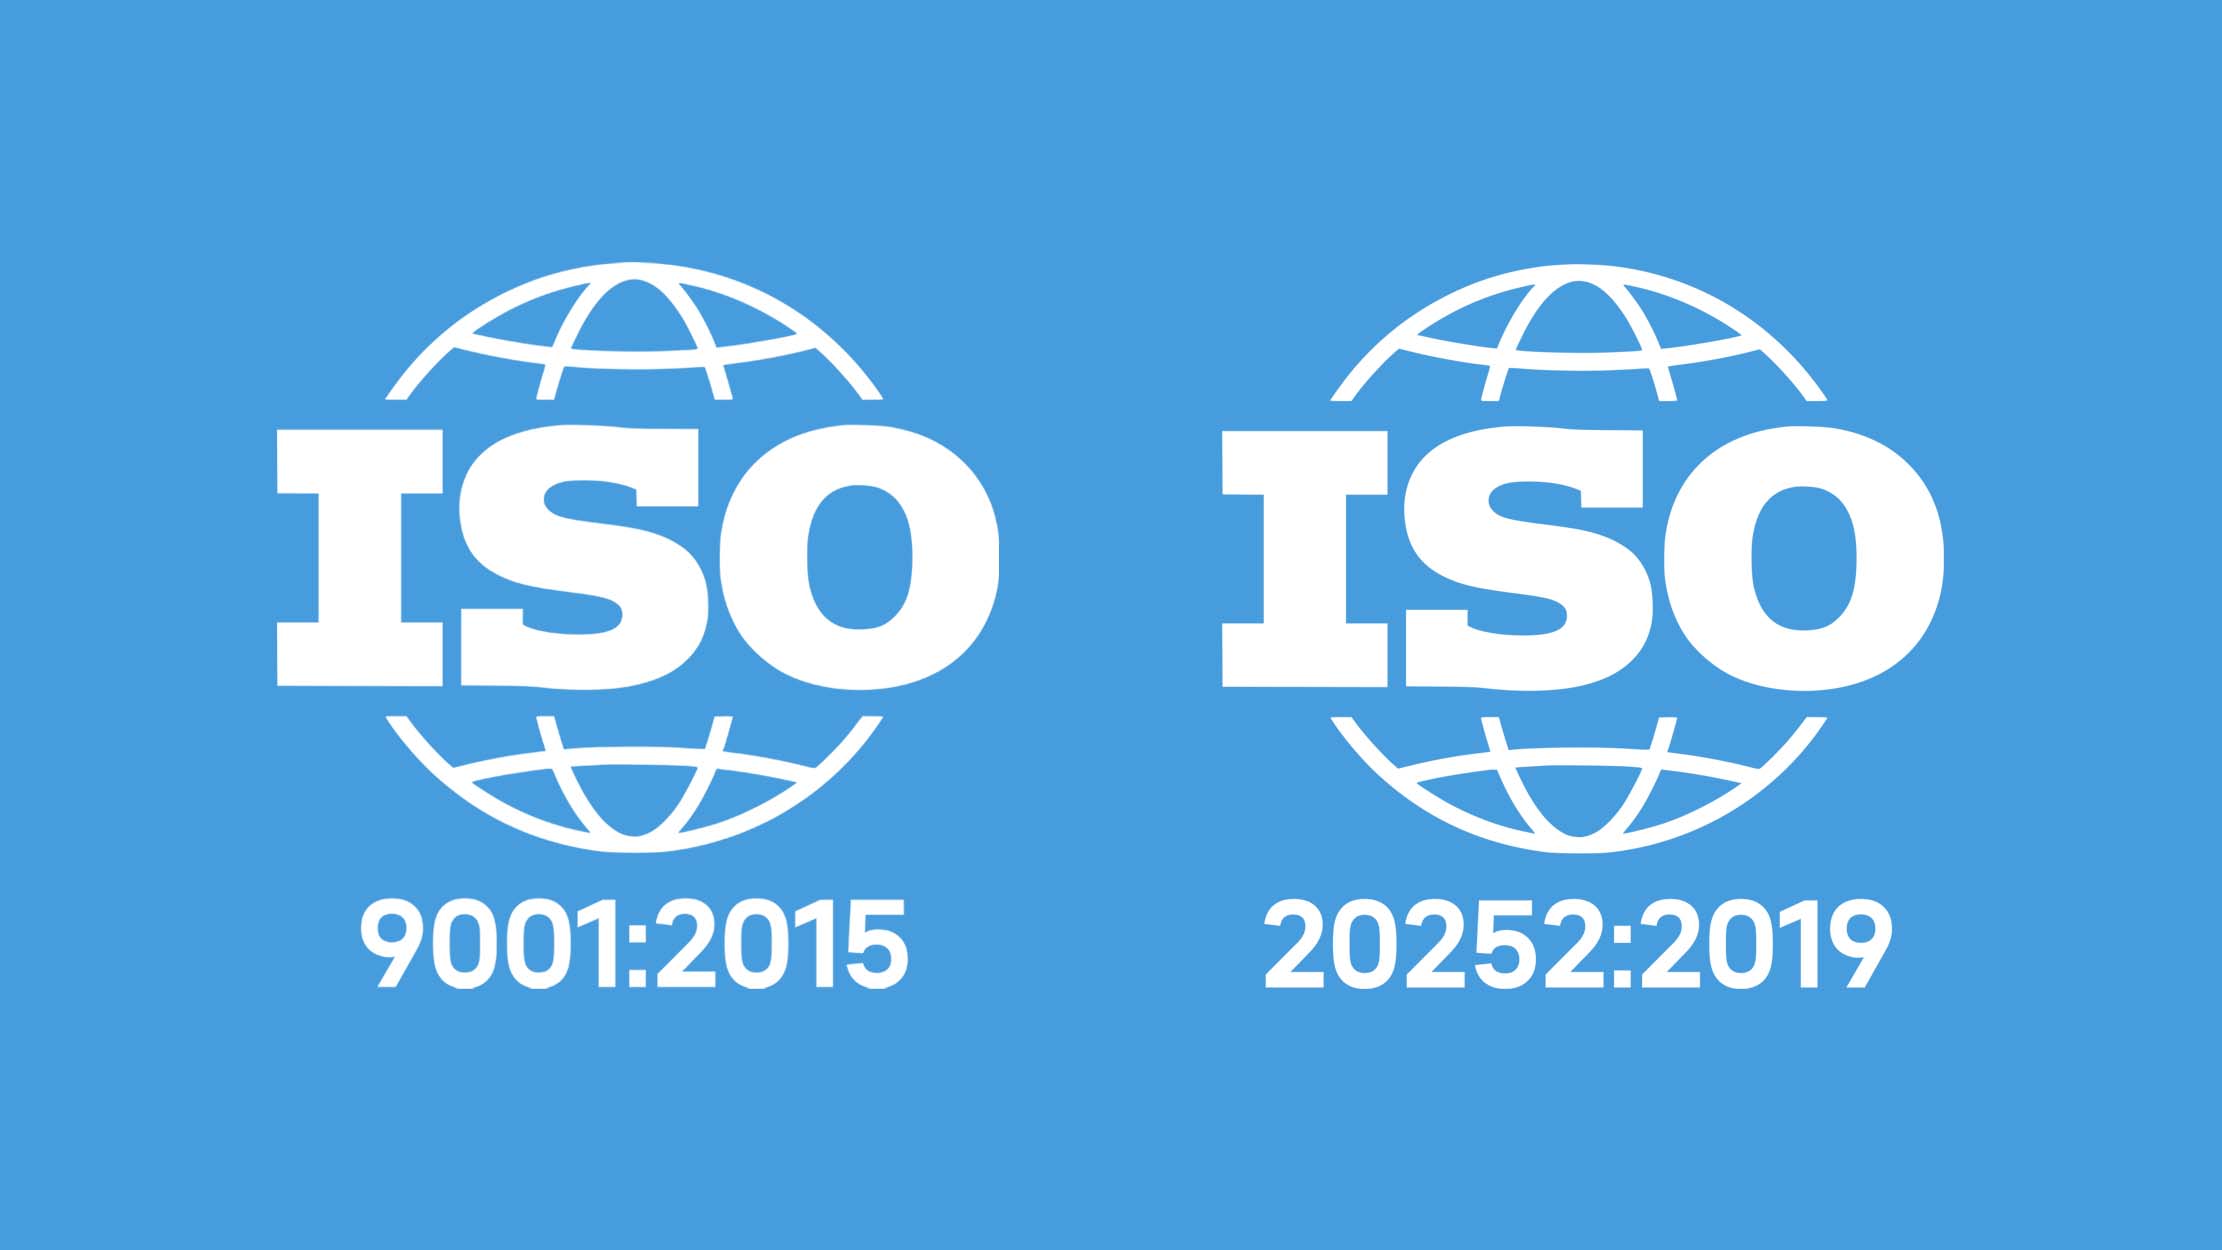 AMR bleibt ISO-zertifiziert: Marktforschung nach internationalen Standards und Datenschutzrichtlinien